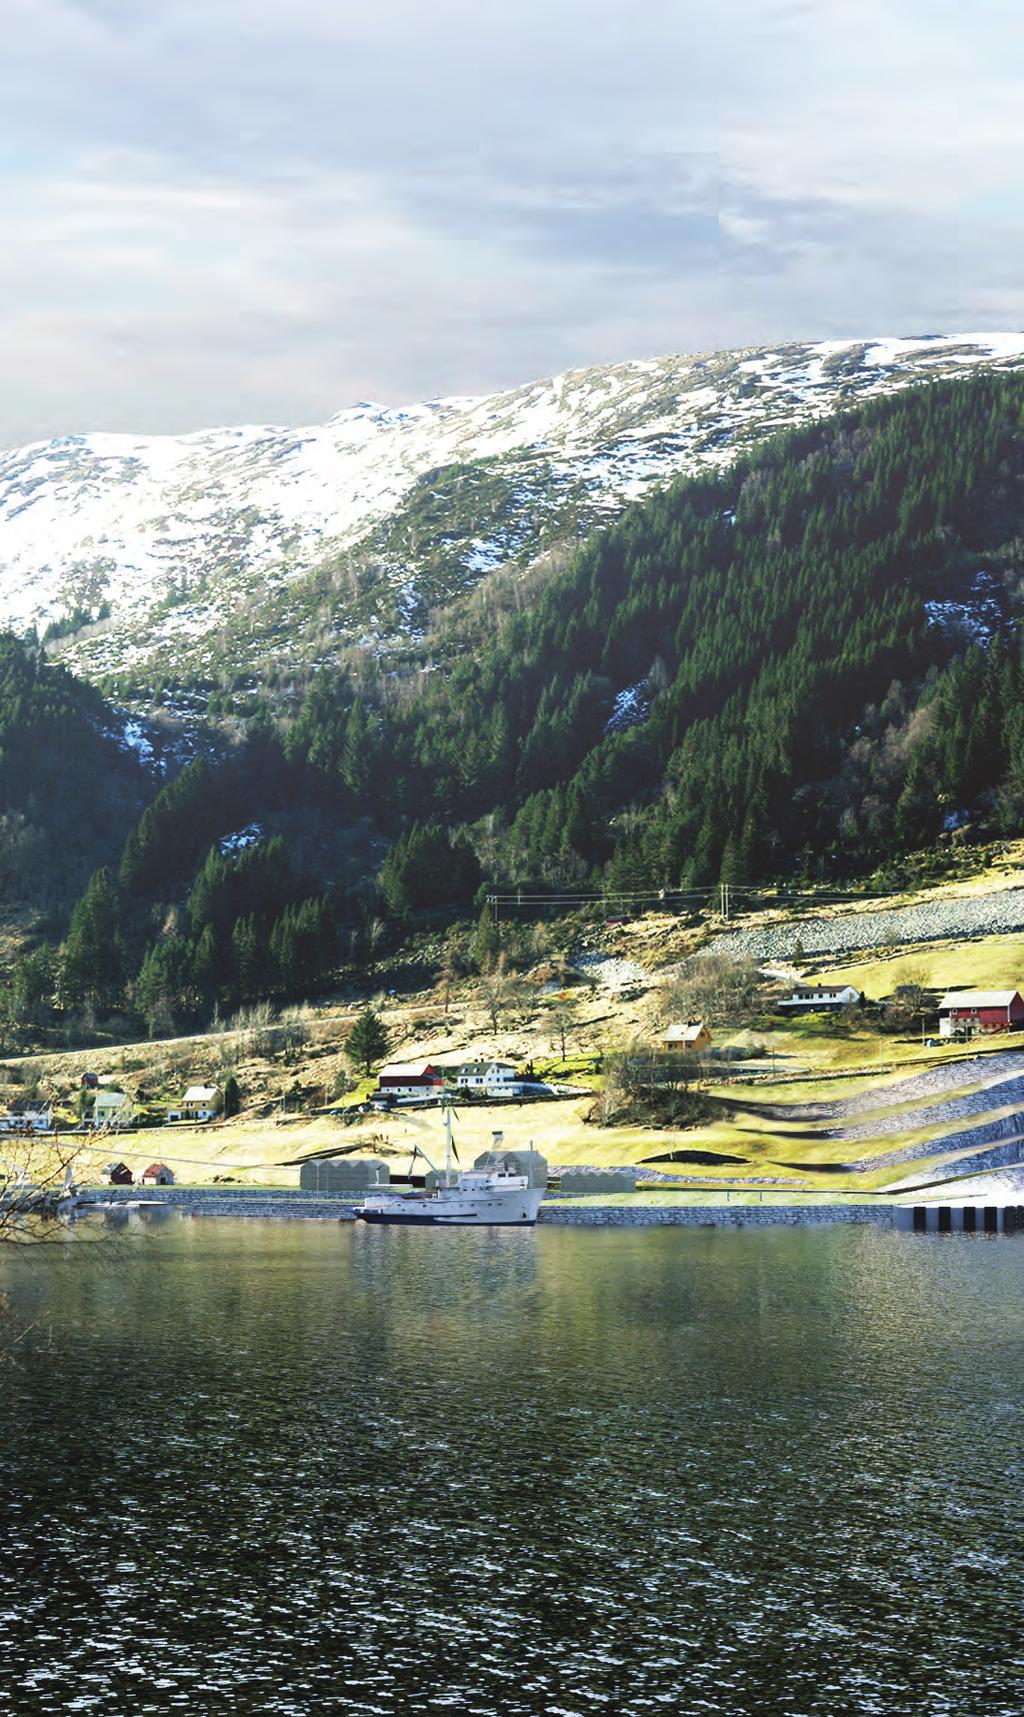 Yurtdışı Projeler Overseas Projects 57 Stad gemi tünelinin arka planı Shadhavet denizi Norveç kıyılarının en zorlu ve tehlikeli bölgelerinden biridir.